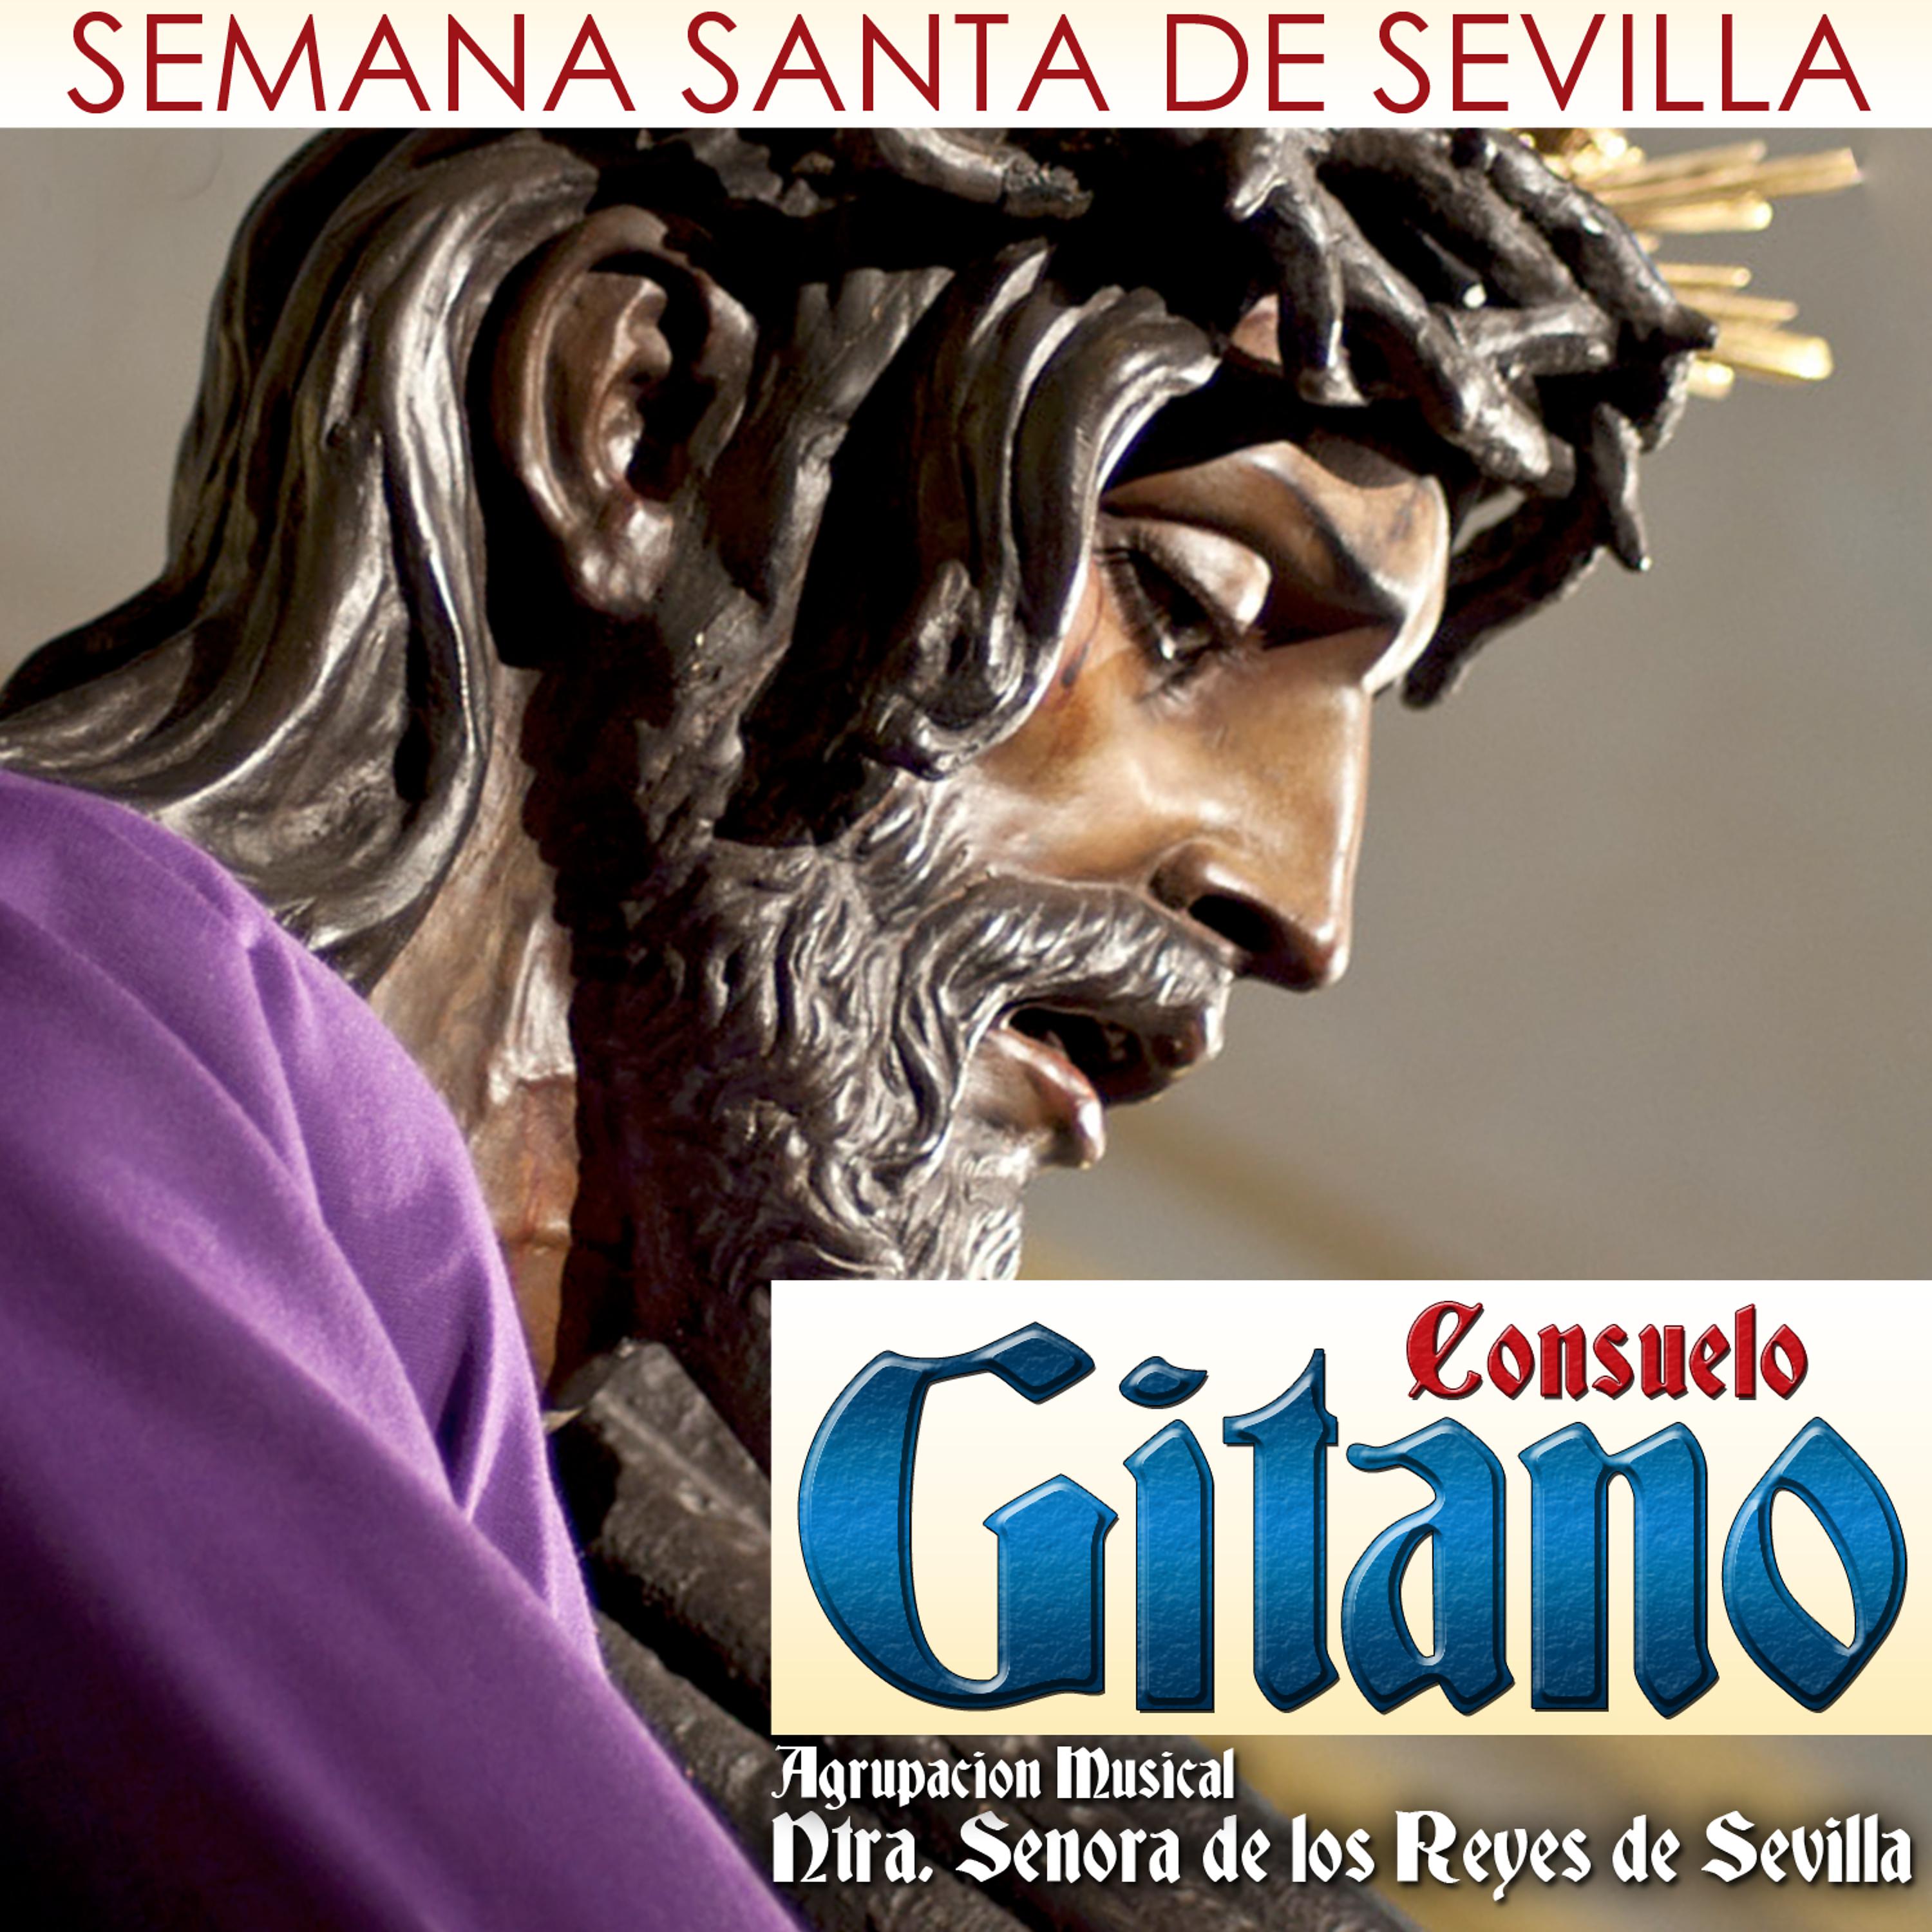 Постер альбома Consuelo Gitano. Semana Santa de Sevilla